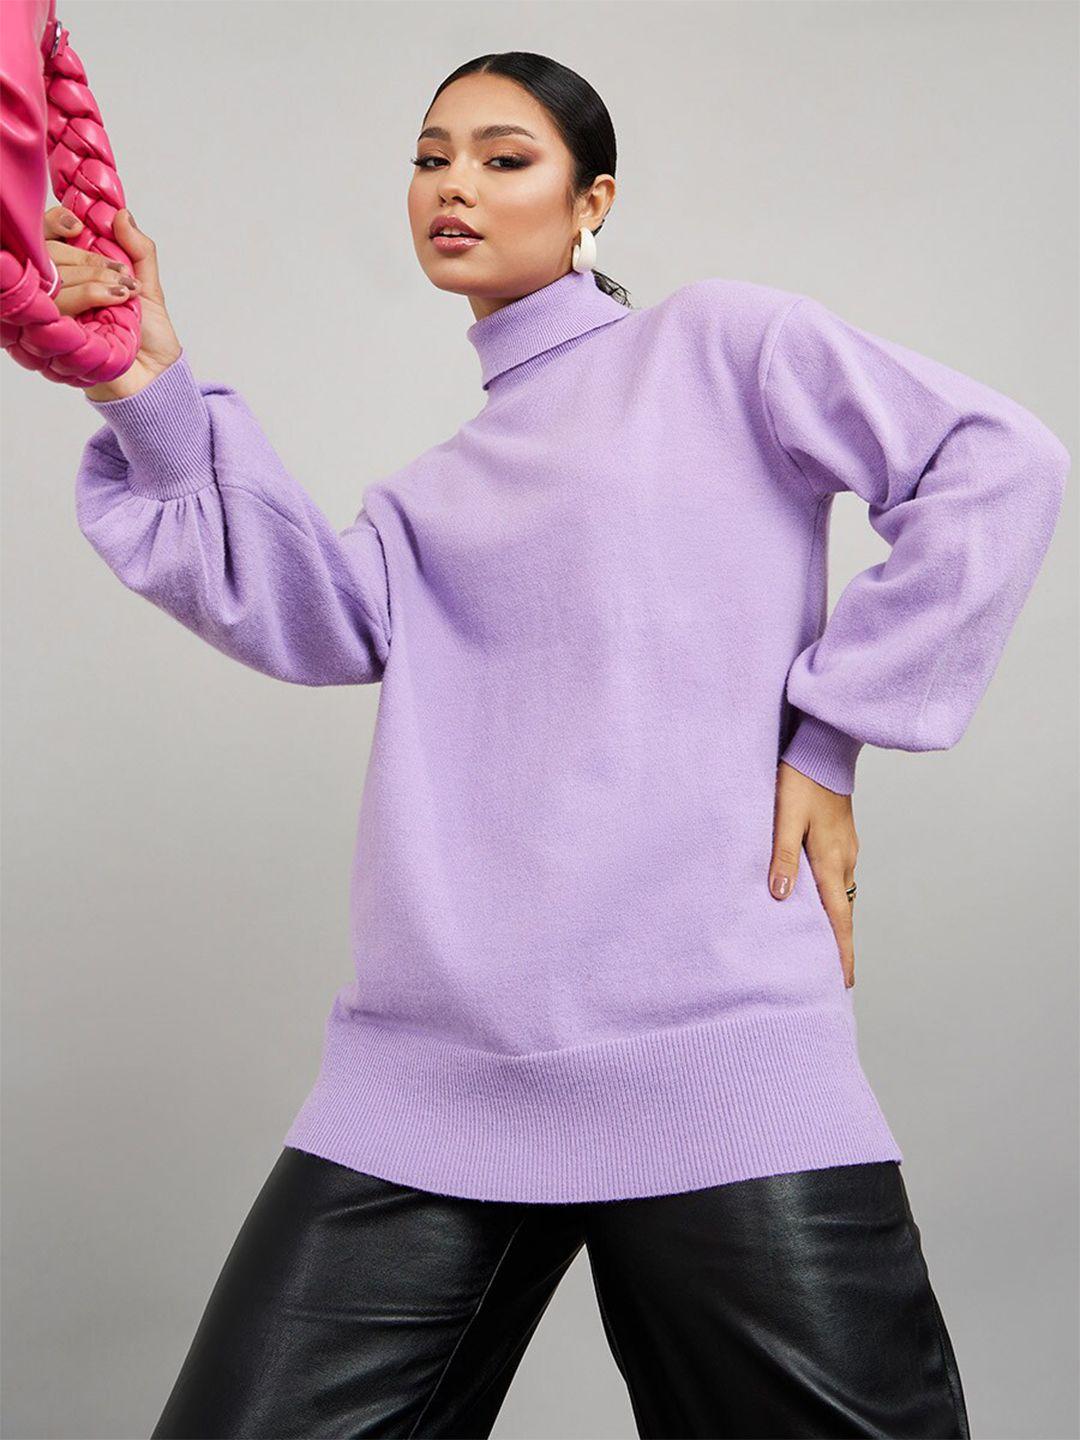 styli women lavender longline pullover sweater